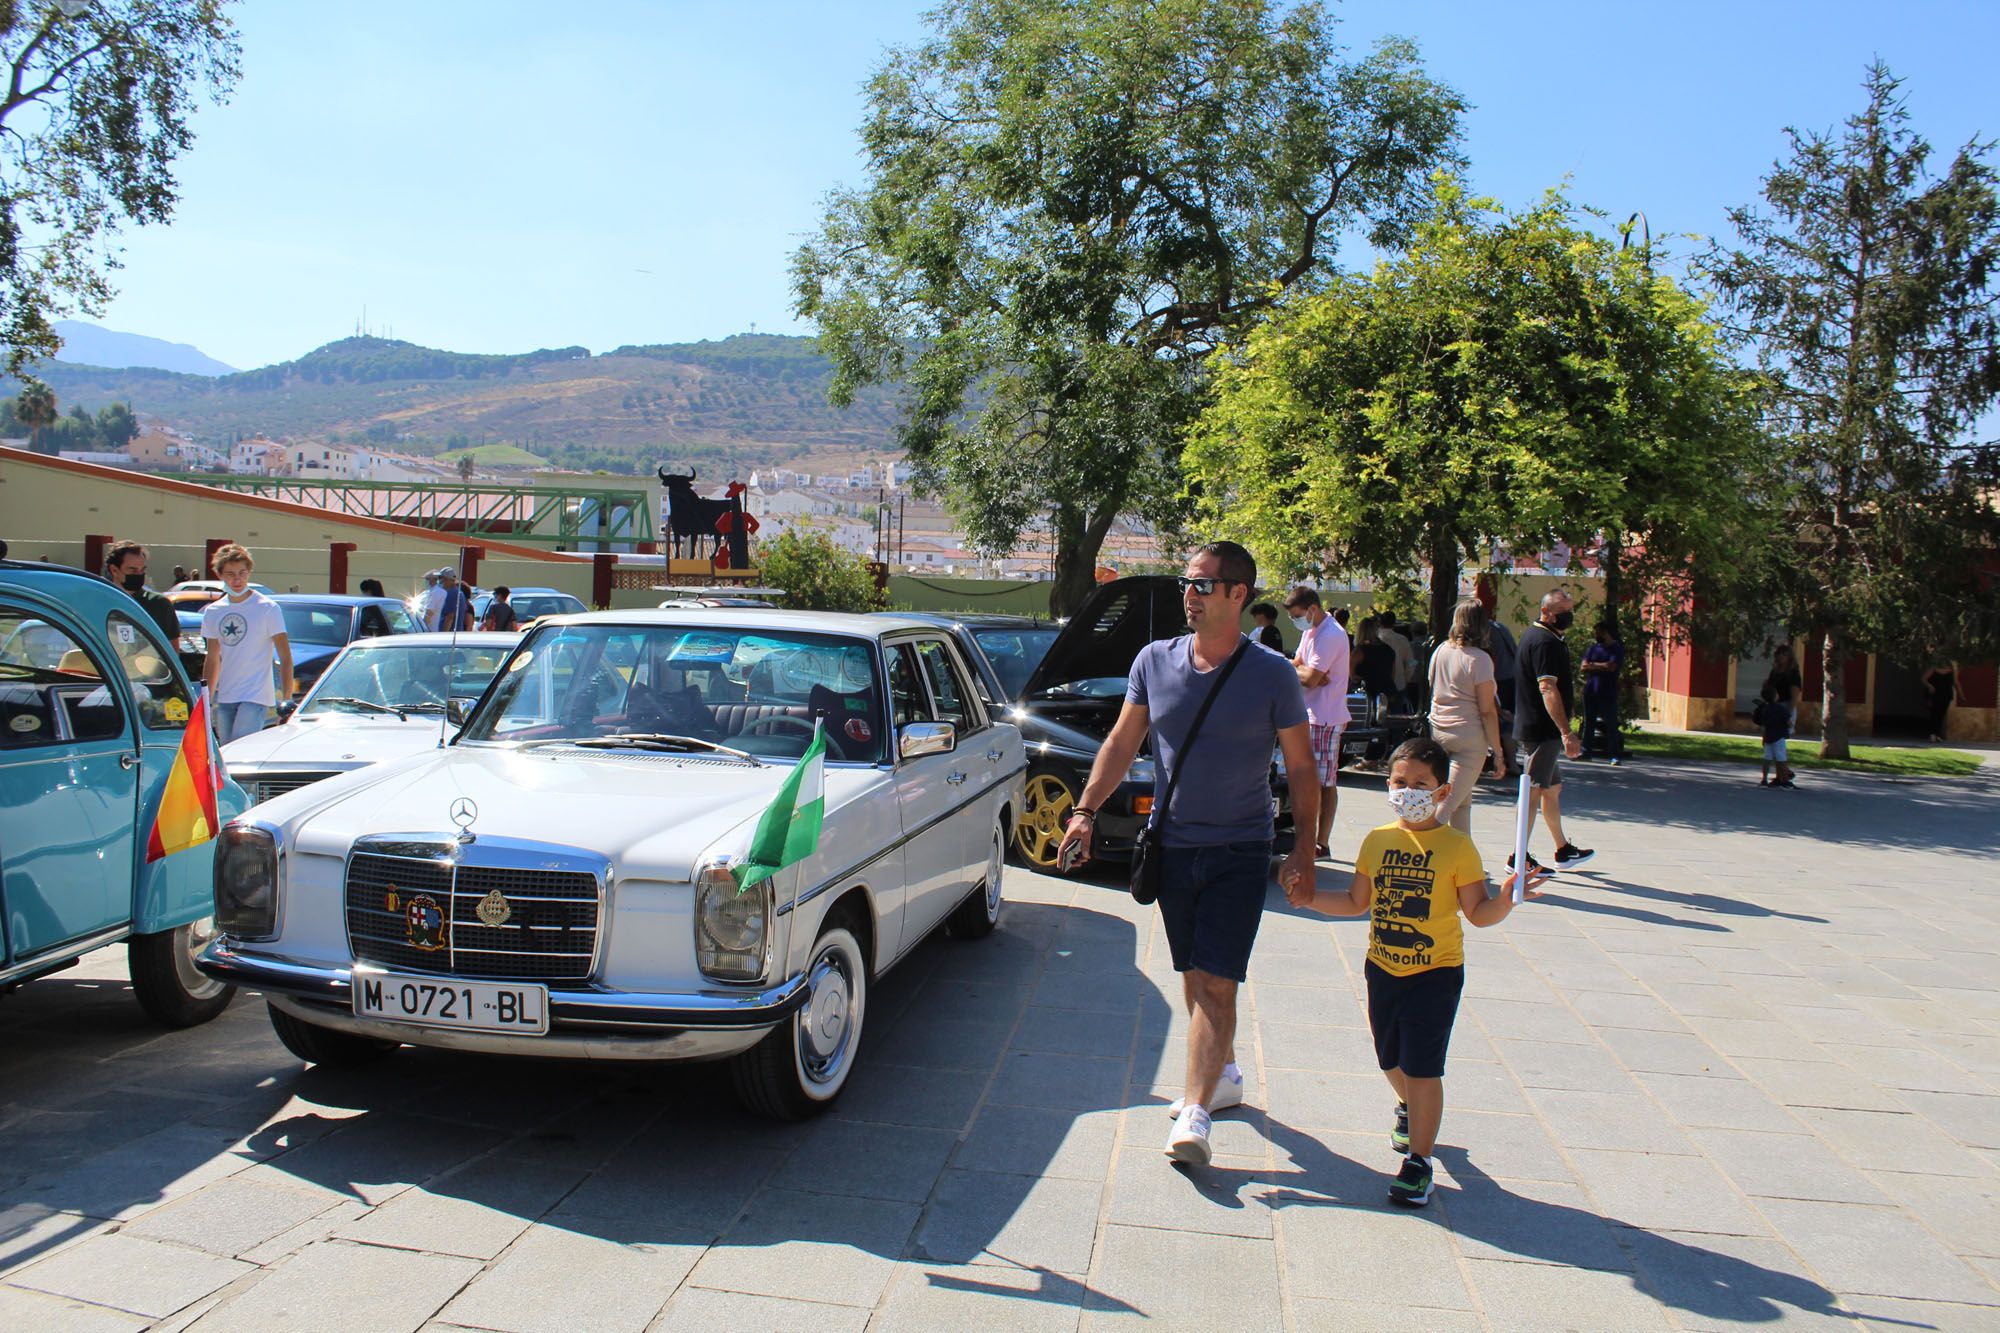 Concentración de coches clásicos en Antequera